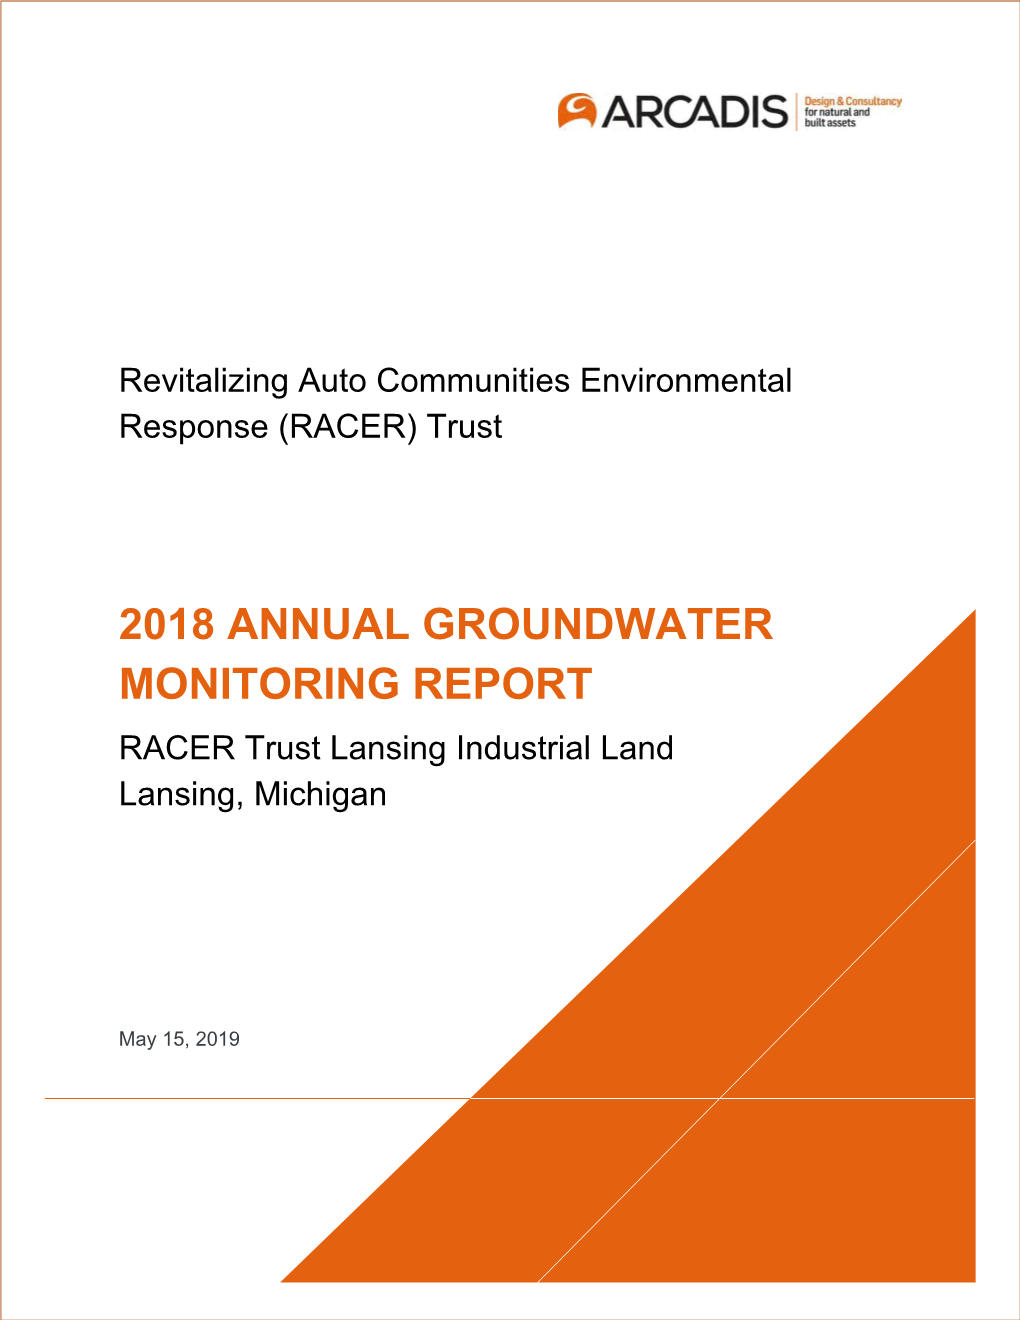 2018 ANNUAL GROUNDWATER MONITORING REPORT RACER Trust Lansing Industrial Land Lansing, Michigan